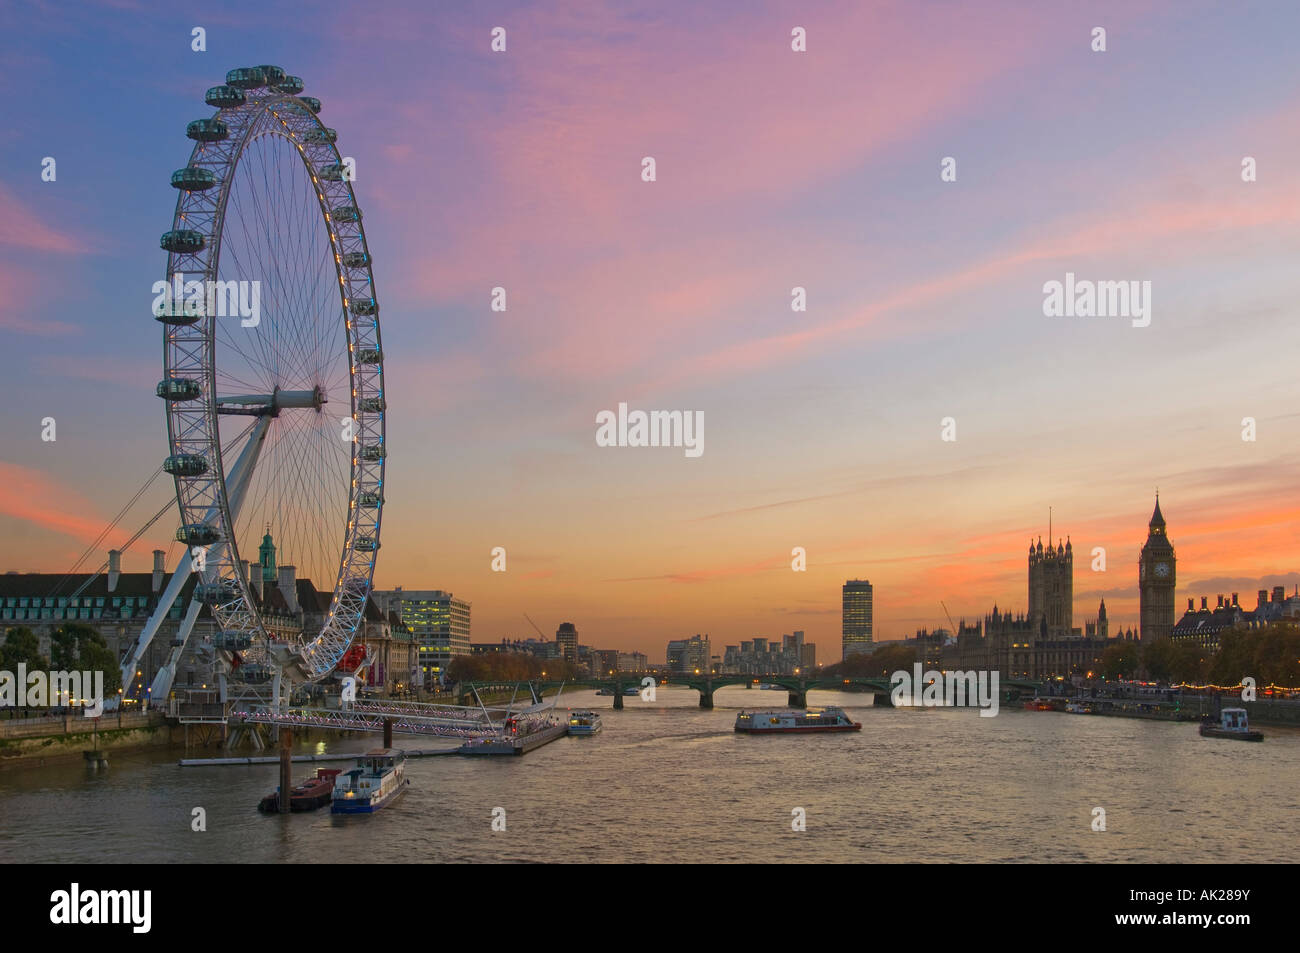 Blick auf das London Eye, Westminster Bridge und den Houses of Parliament von Charing Cross Fußgängerbrücke am Sonnenuntergang Dämmerung am Abend. Stockfoto